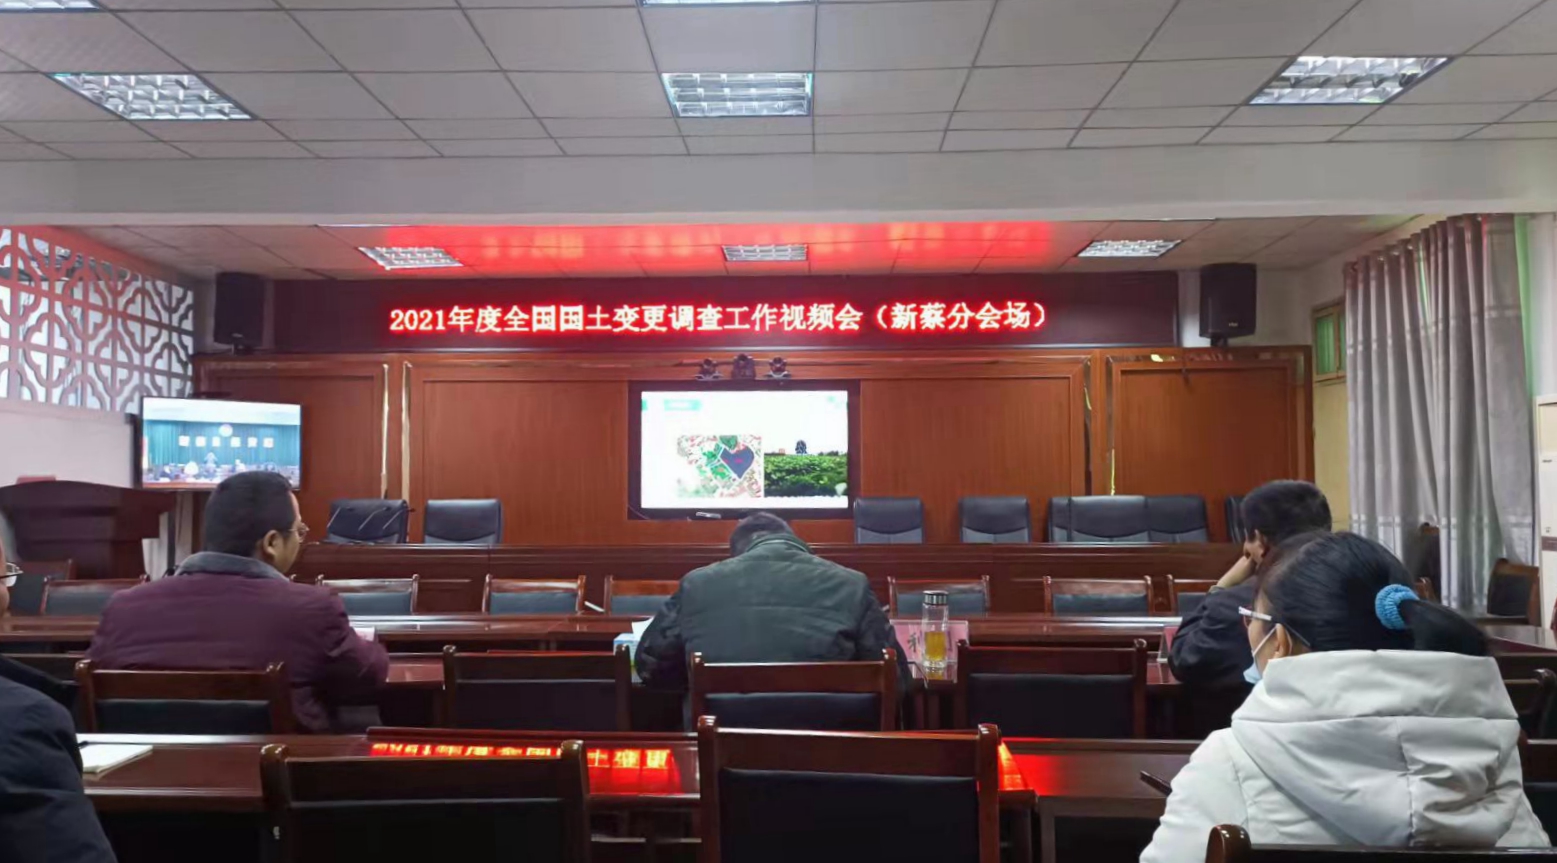 新蔡县自然资源局组织收听收看2021年度全国国土变更调查暨技术培训视频会